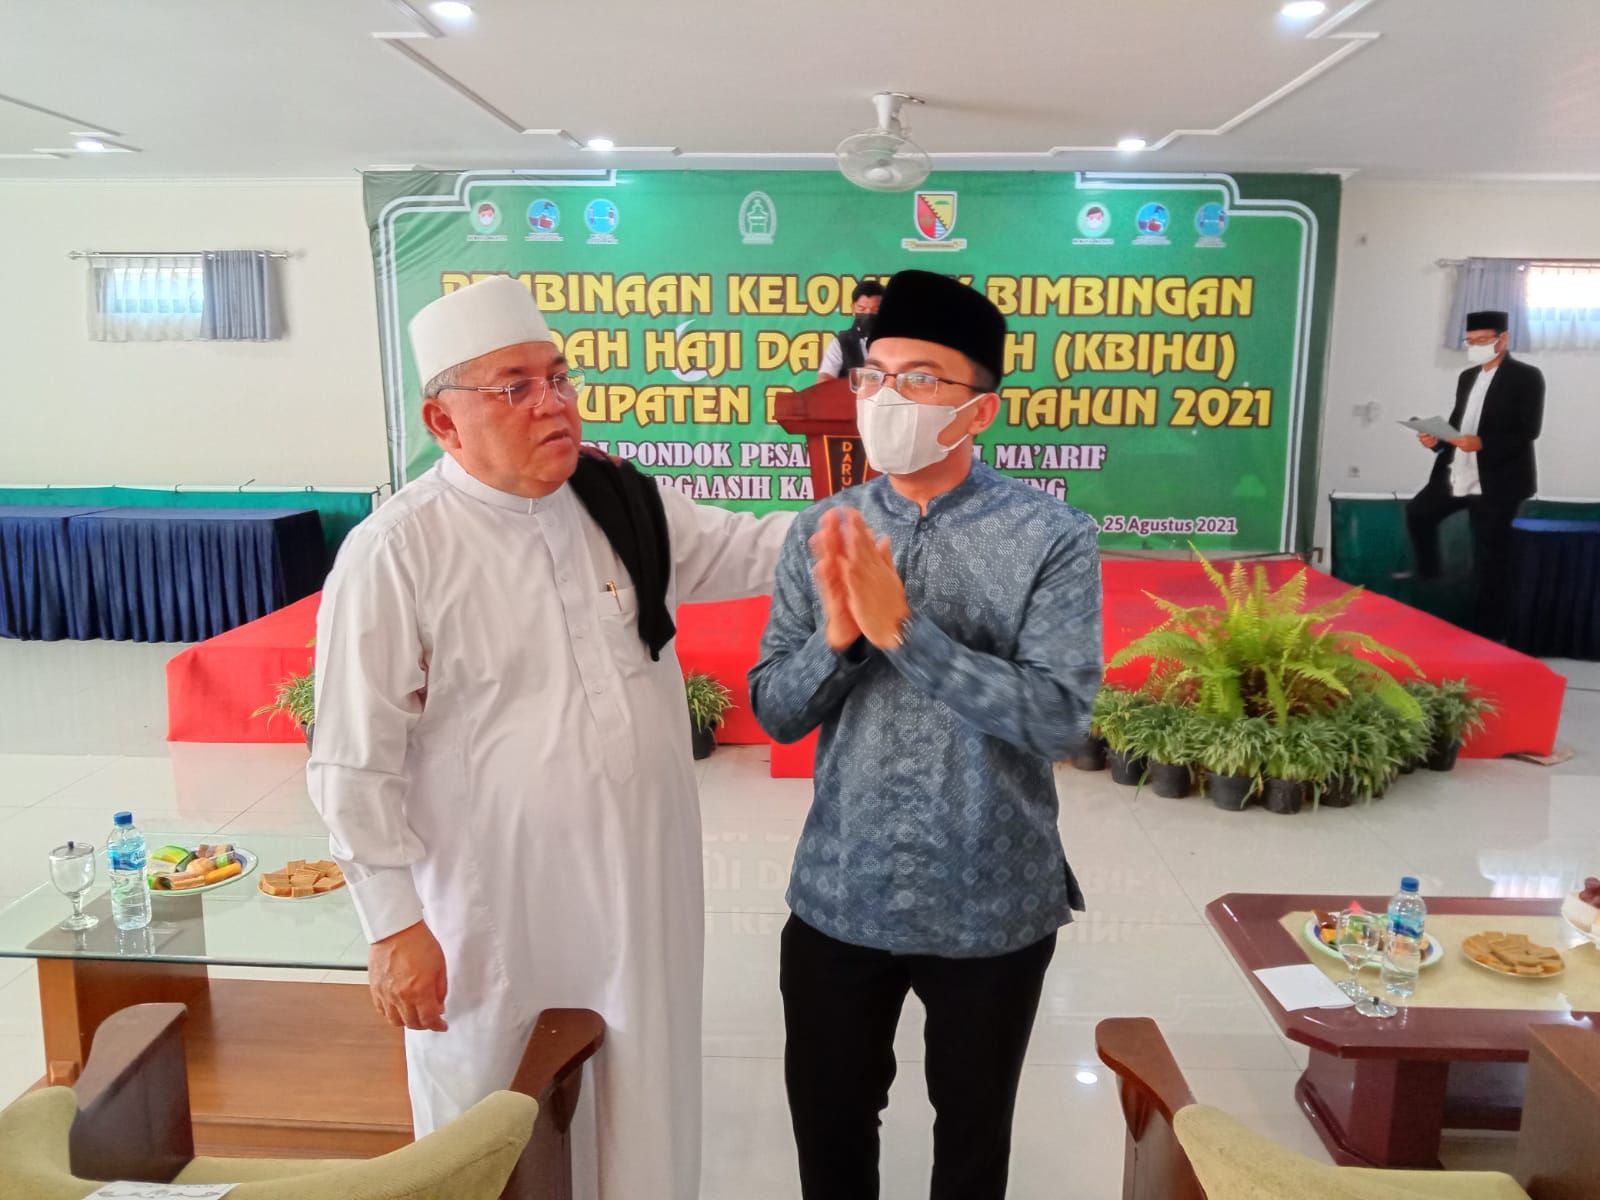 Ketua Forum KBIHU Kabupaten Bandung, KH Sofyan Yayah MA